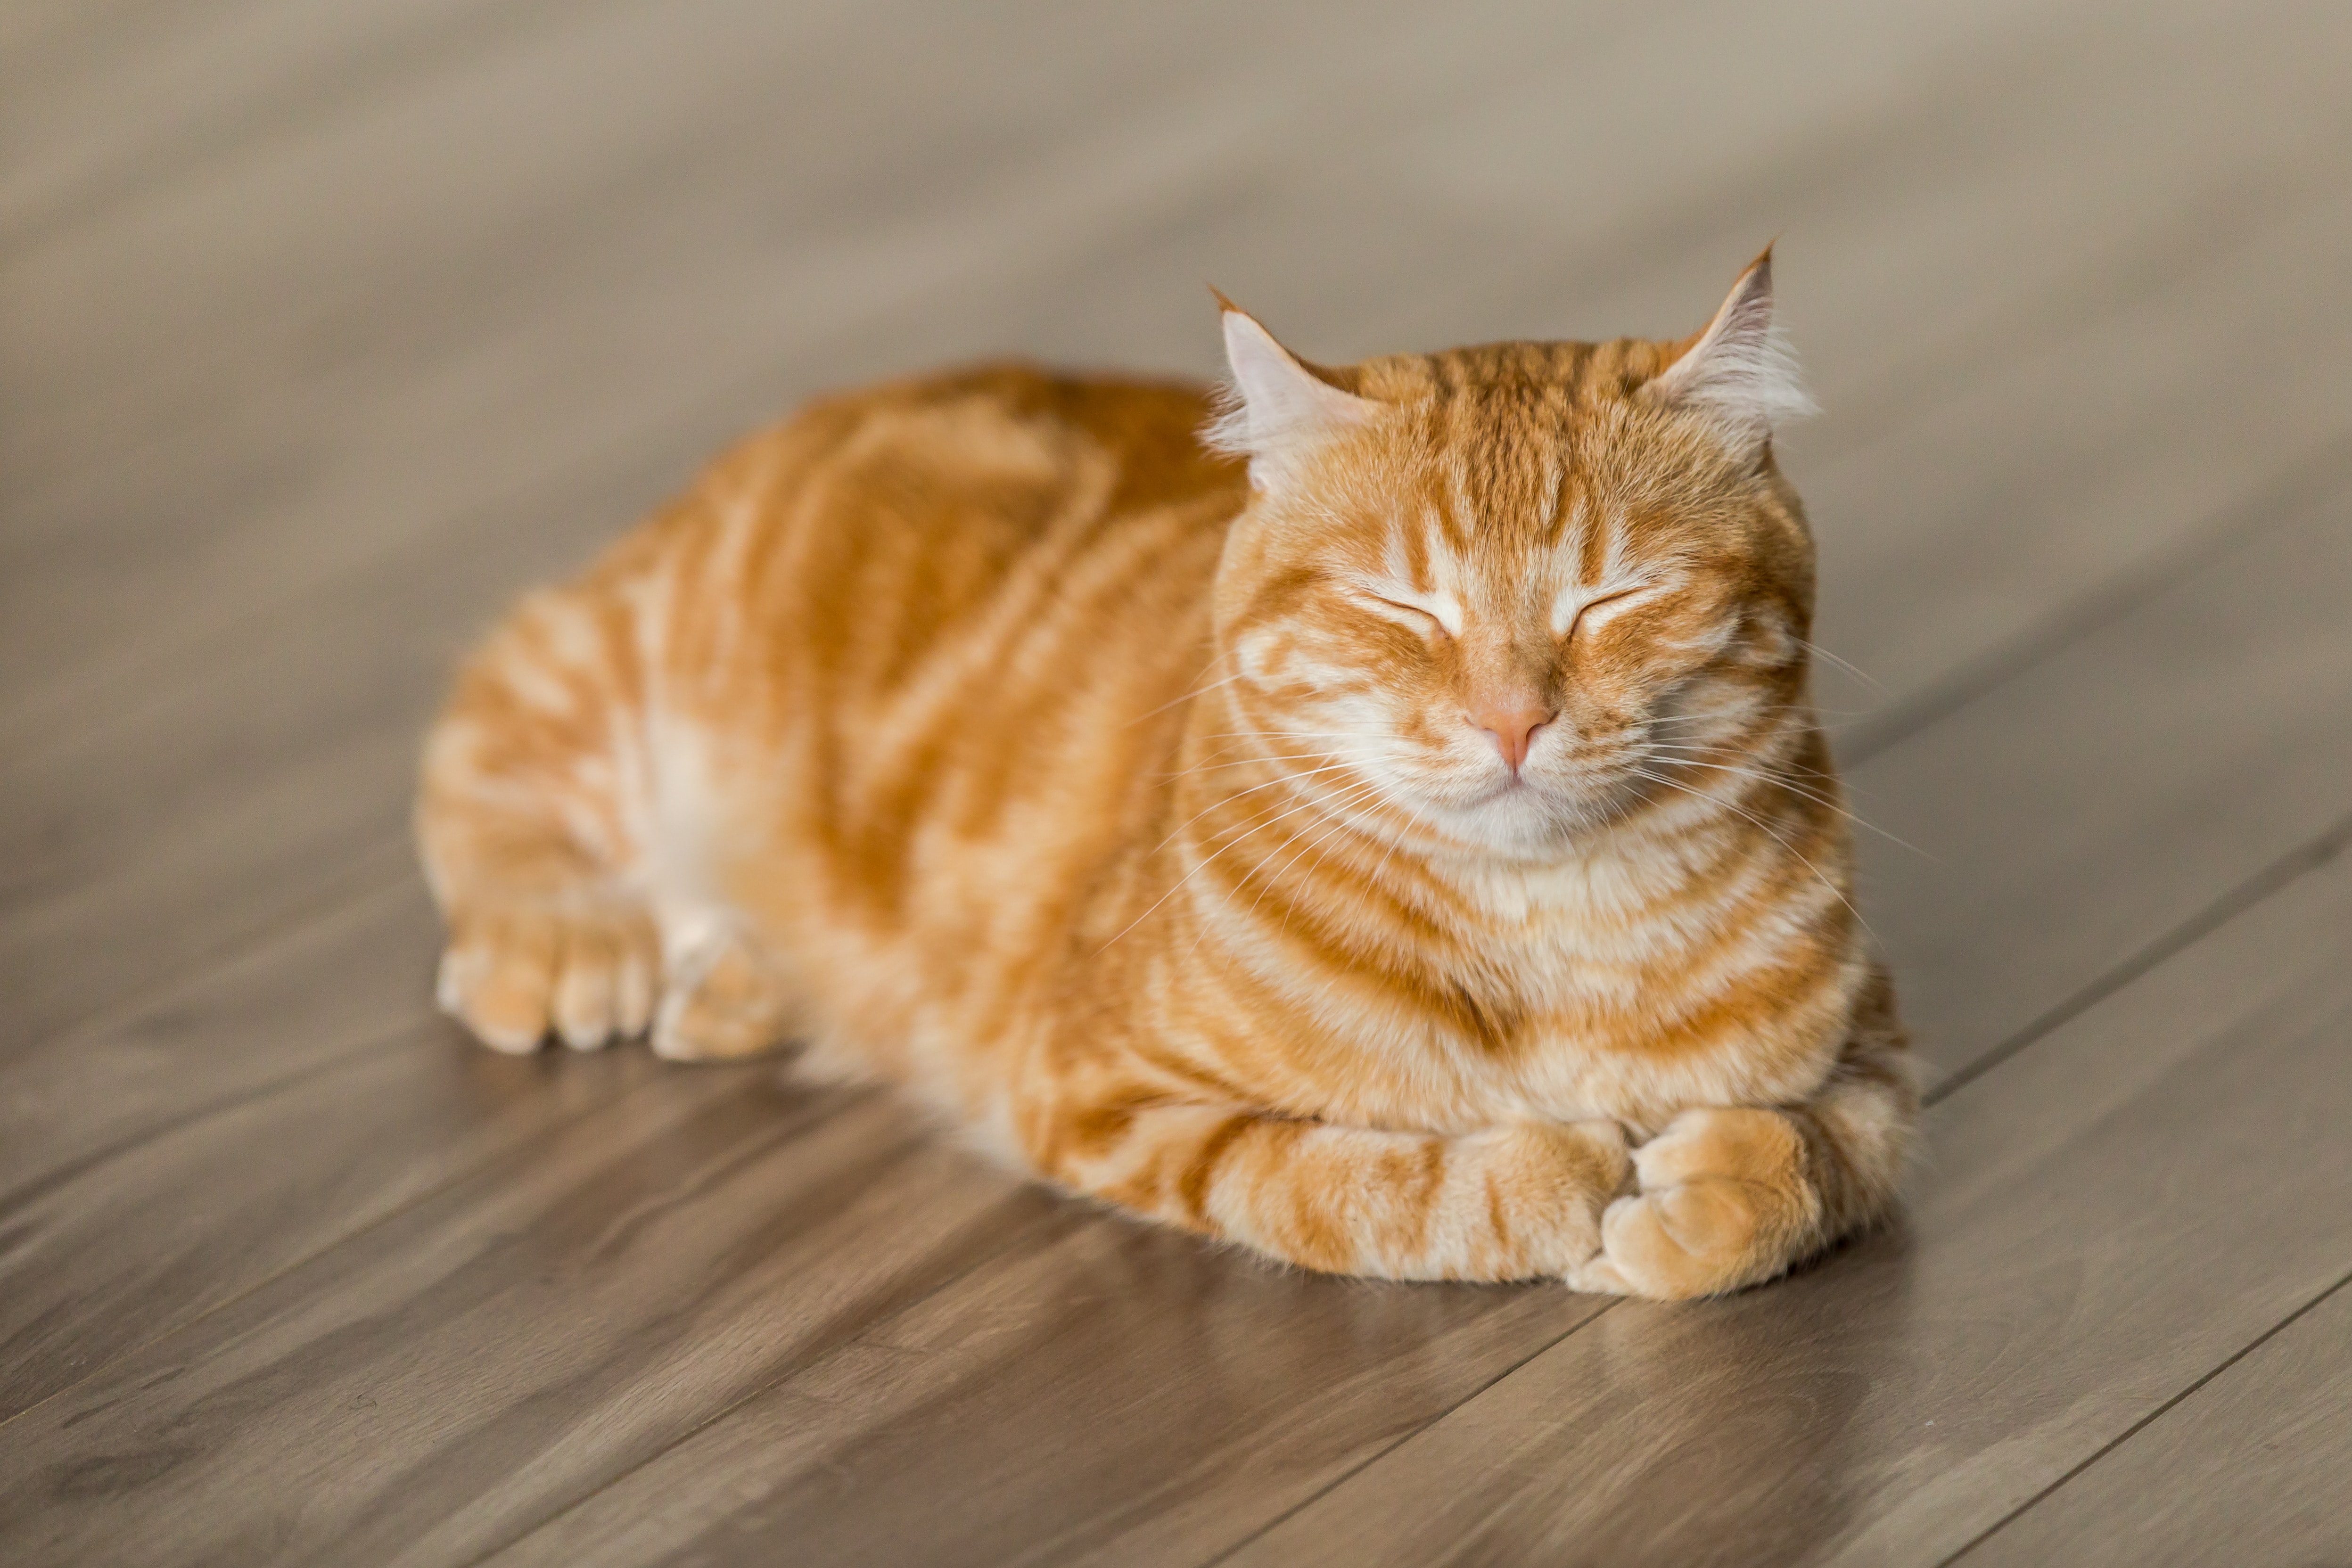 orange-cat